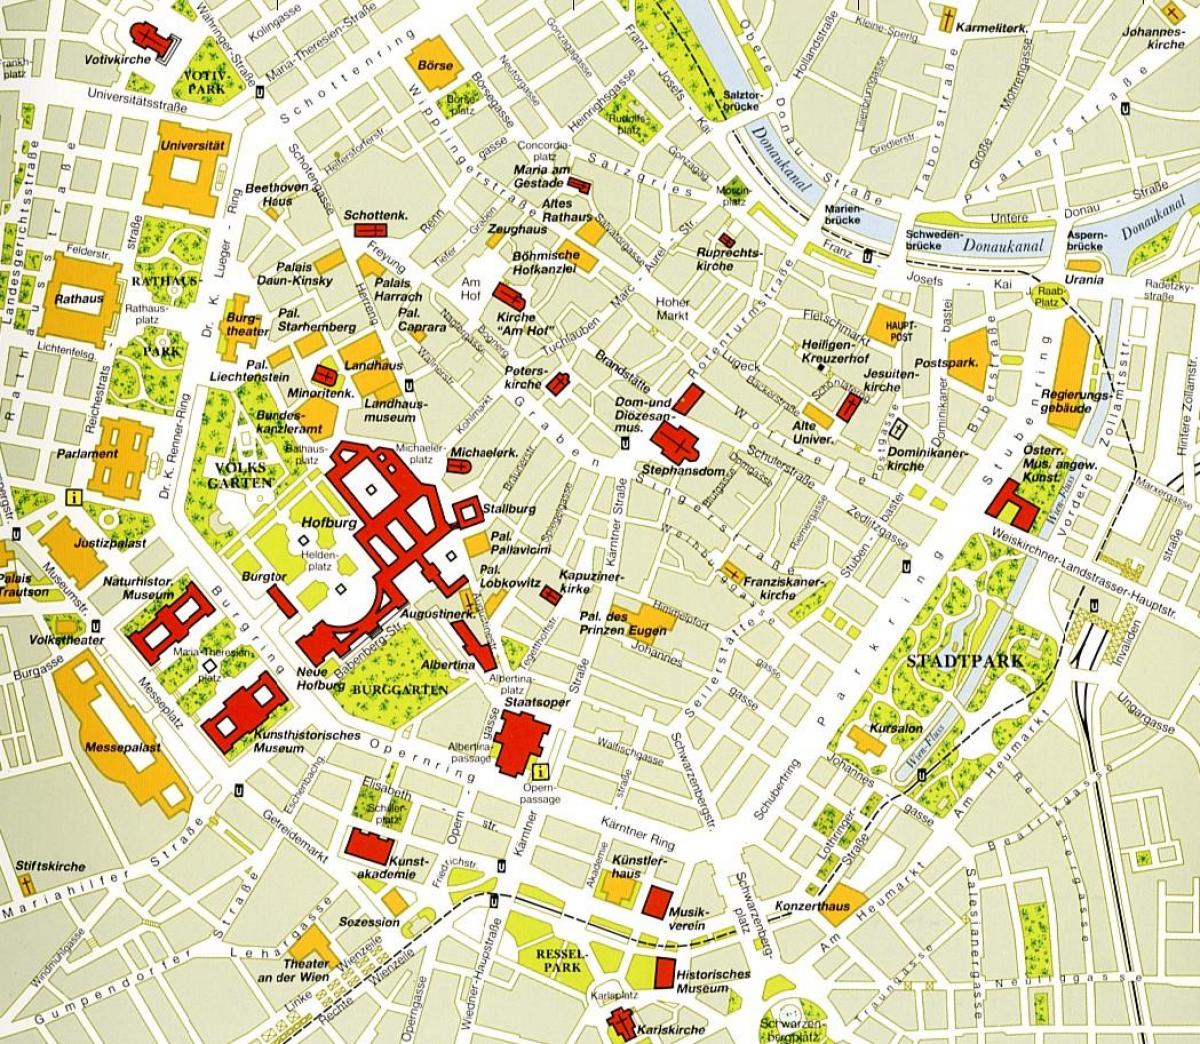 Vienna center mapě